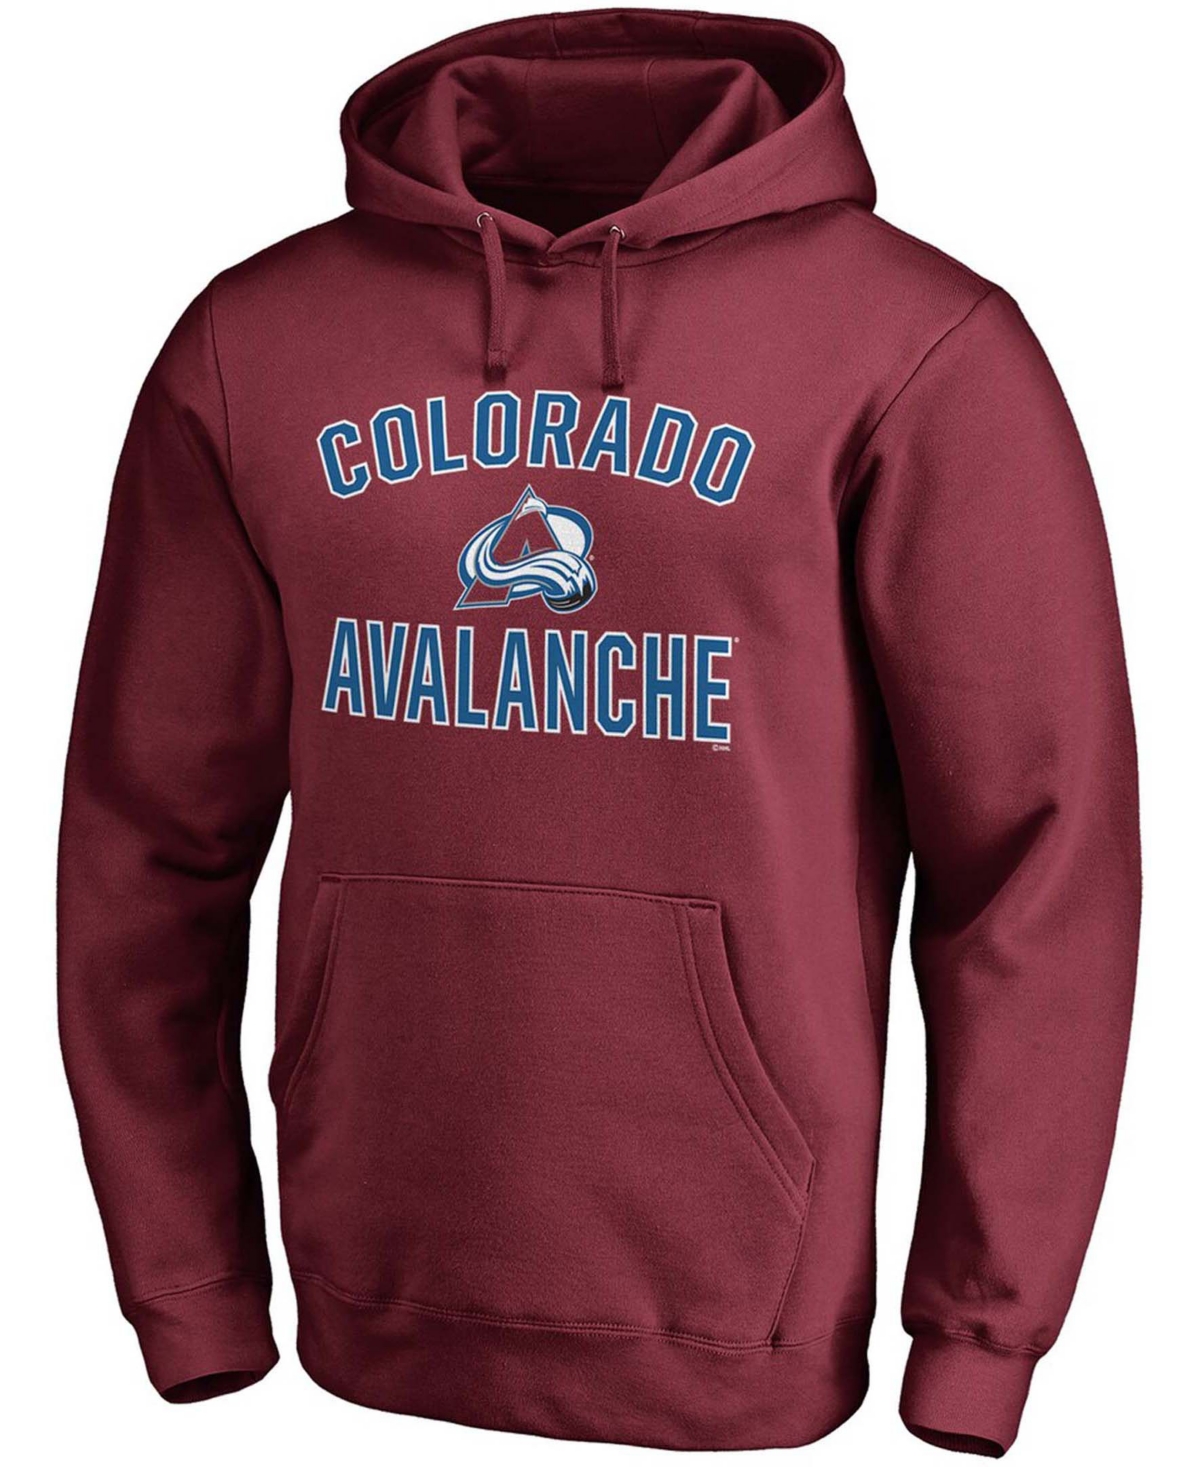 Shop Fanatics Men's Burgundy Colorado Avalanche Team Victory Arch Pullover Hoodie